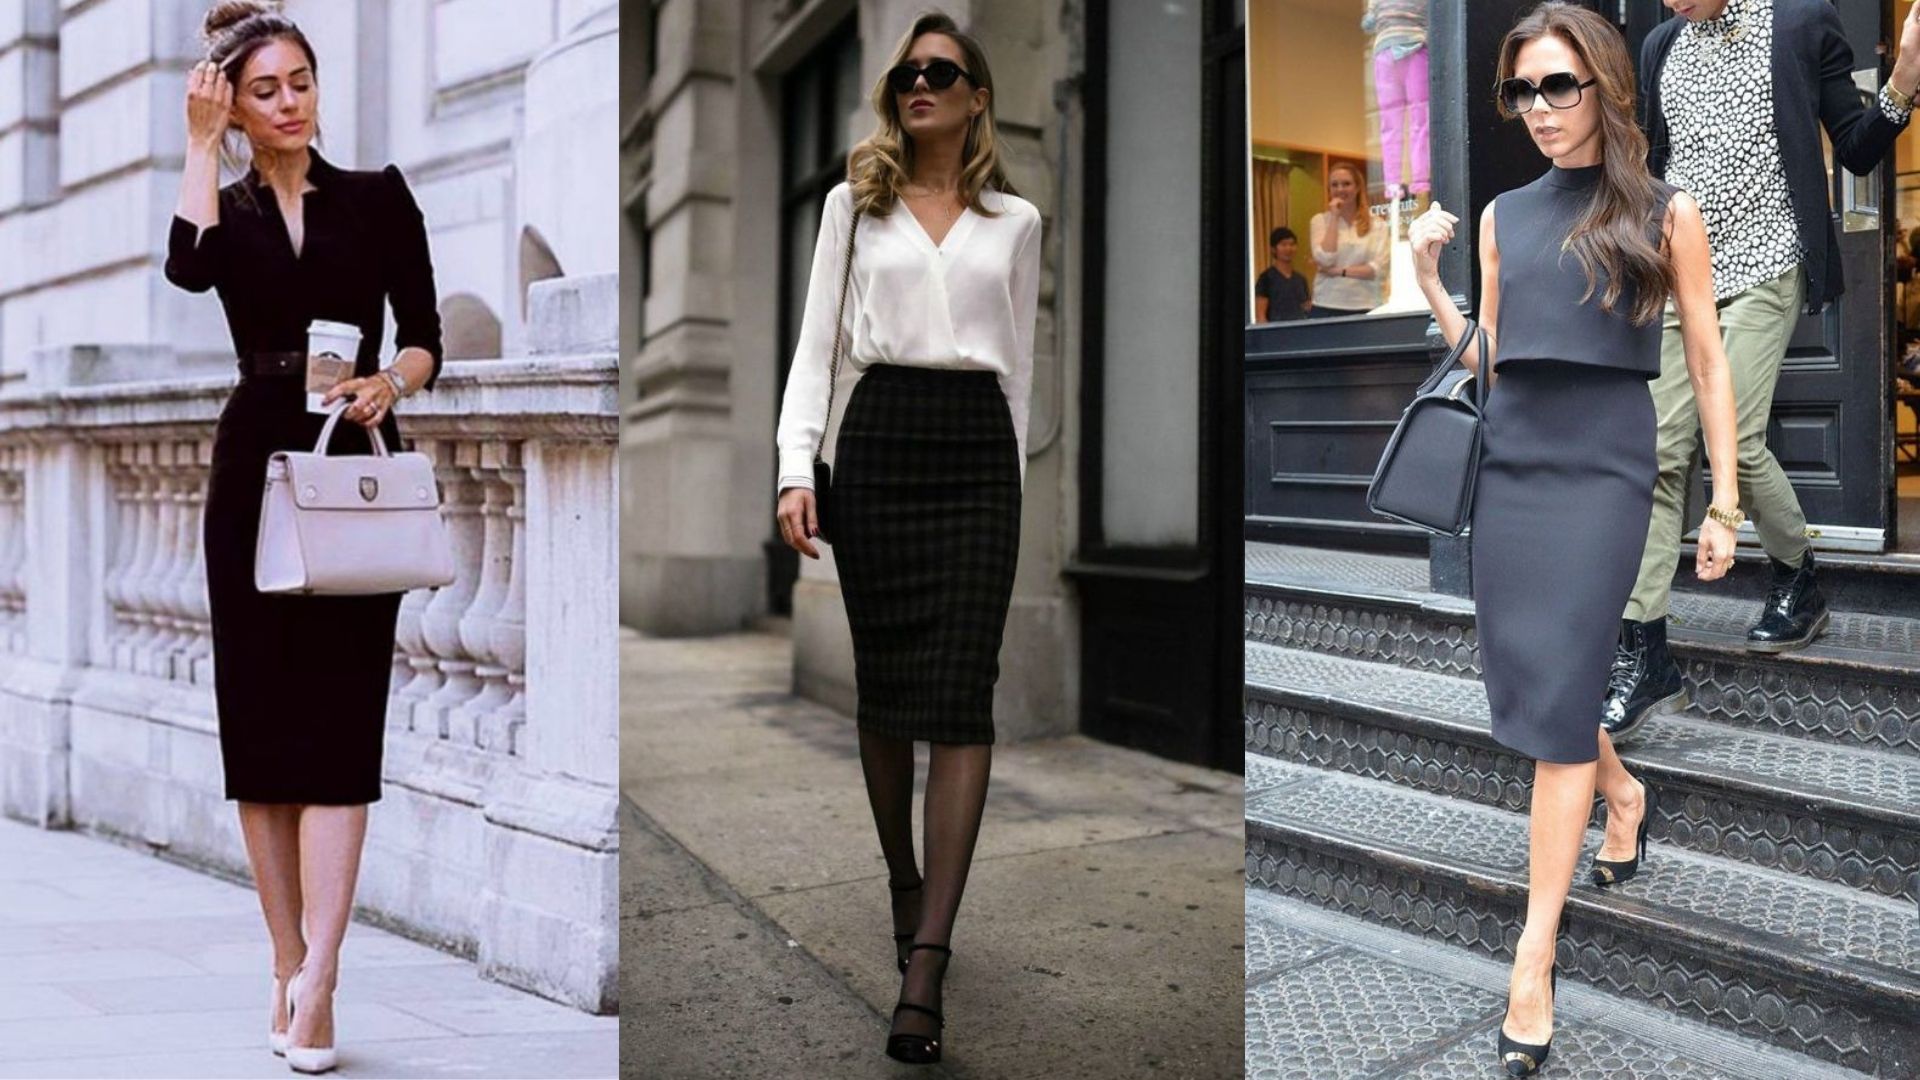 Vestidos midi e saia lápis ajudam a compor o dress code de trabalho de uma mulher poderosa.